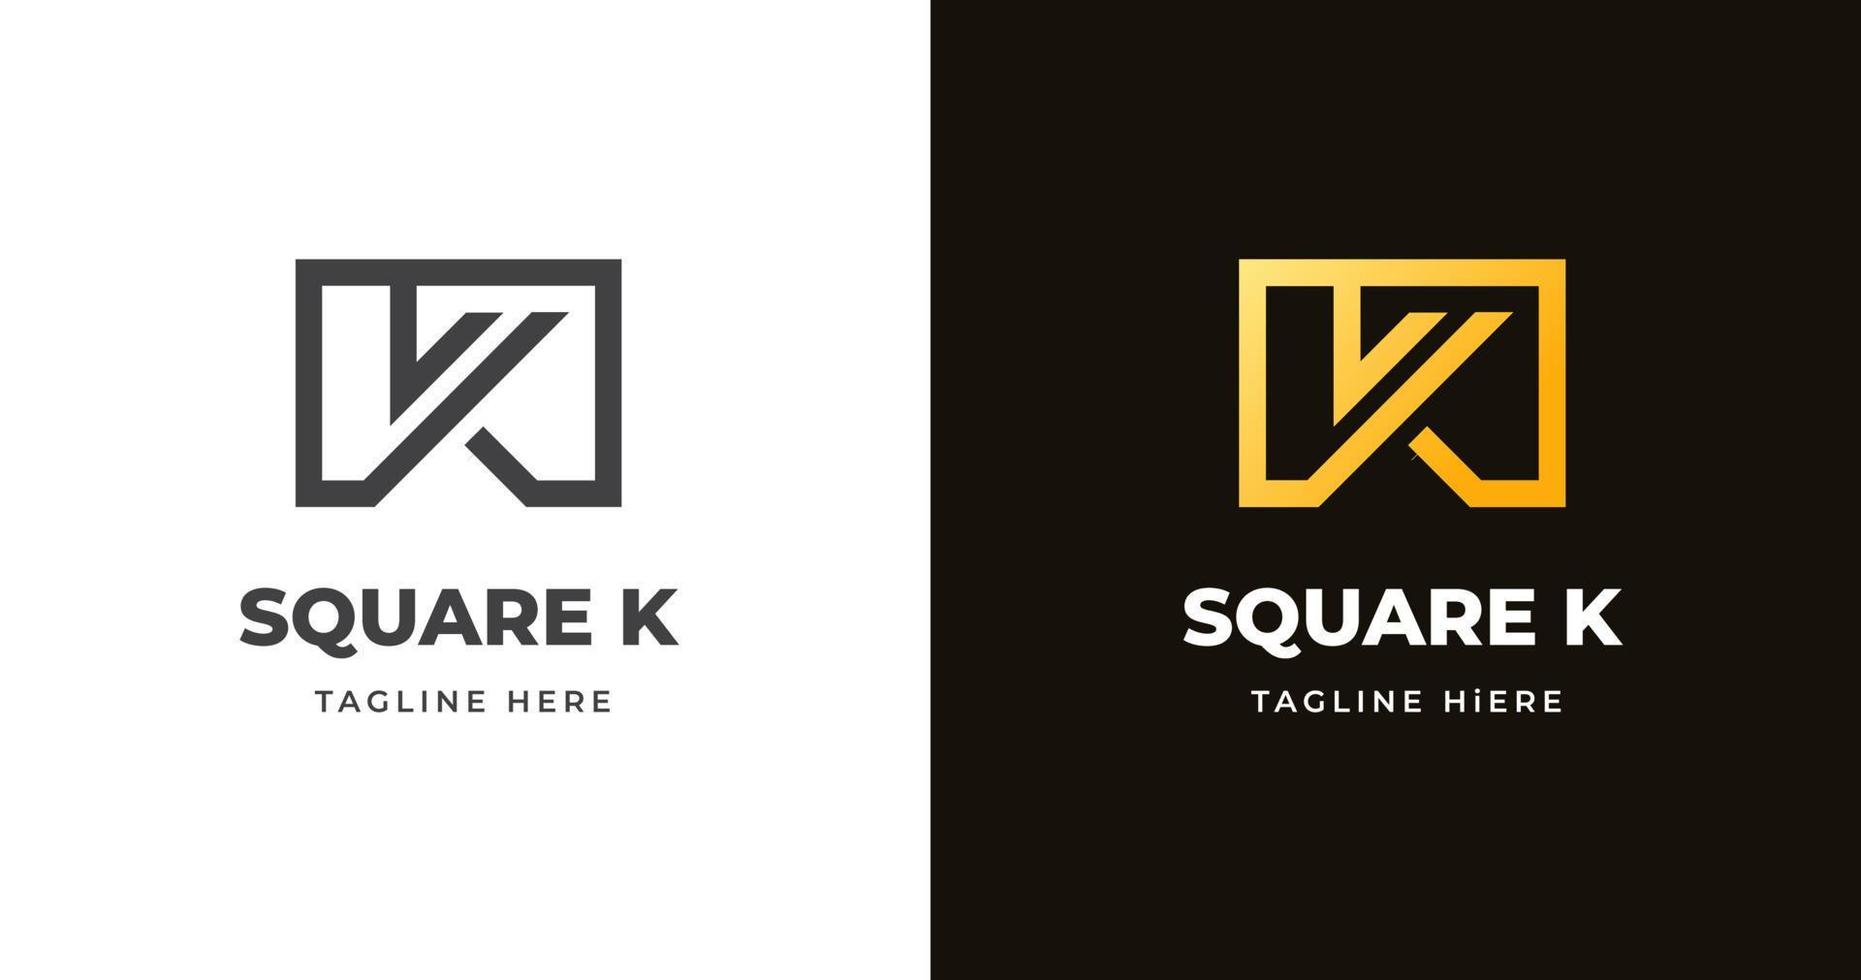 plantilla de diseño de logotipo de letra k con estilo de forma cuadrada vector